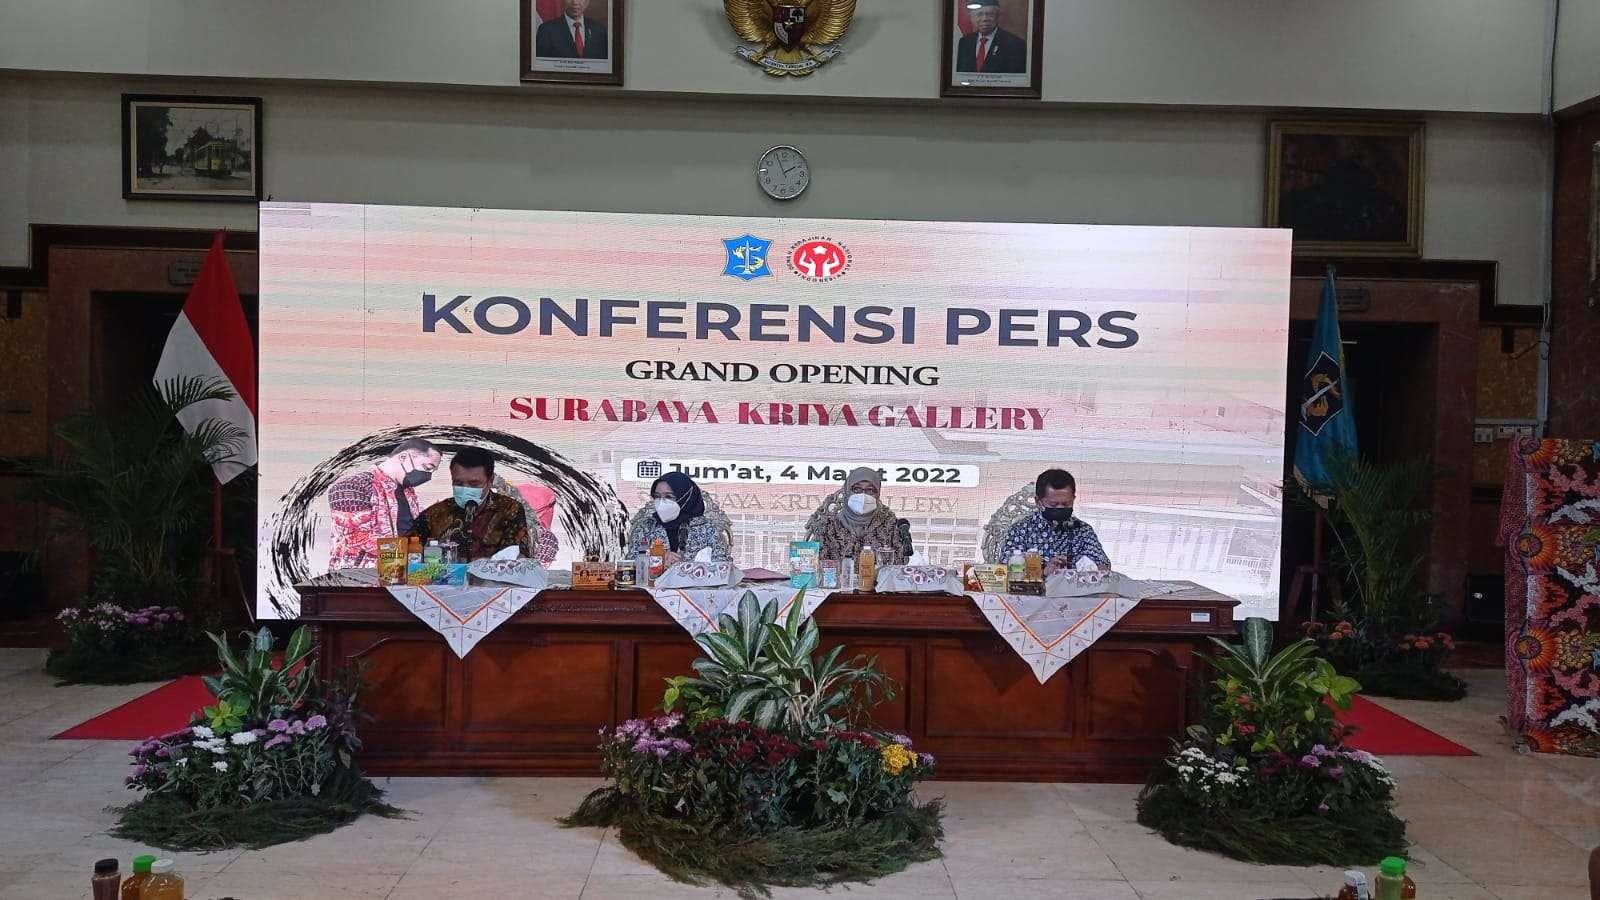 Ketua Dekranasda Surabaya, Rini Indriyani (dua dari kiri) menjelaskan rencana opening Surabaya Kriya Gallery di Balai Kota, Surabaya, Jumat 4 Maret 2022. (Foto: Istimewa)